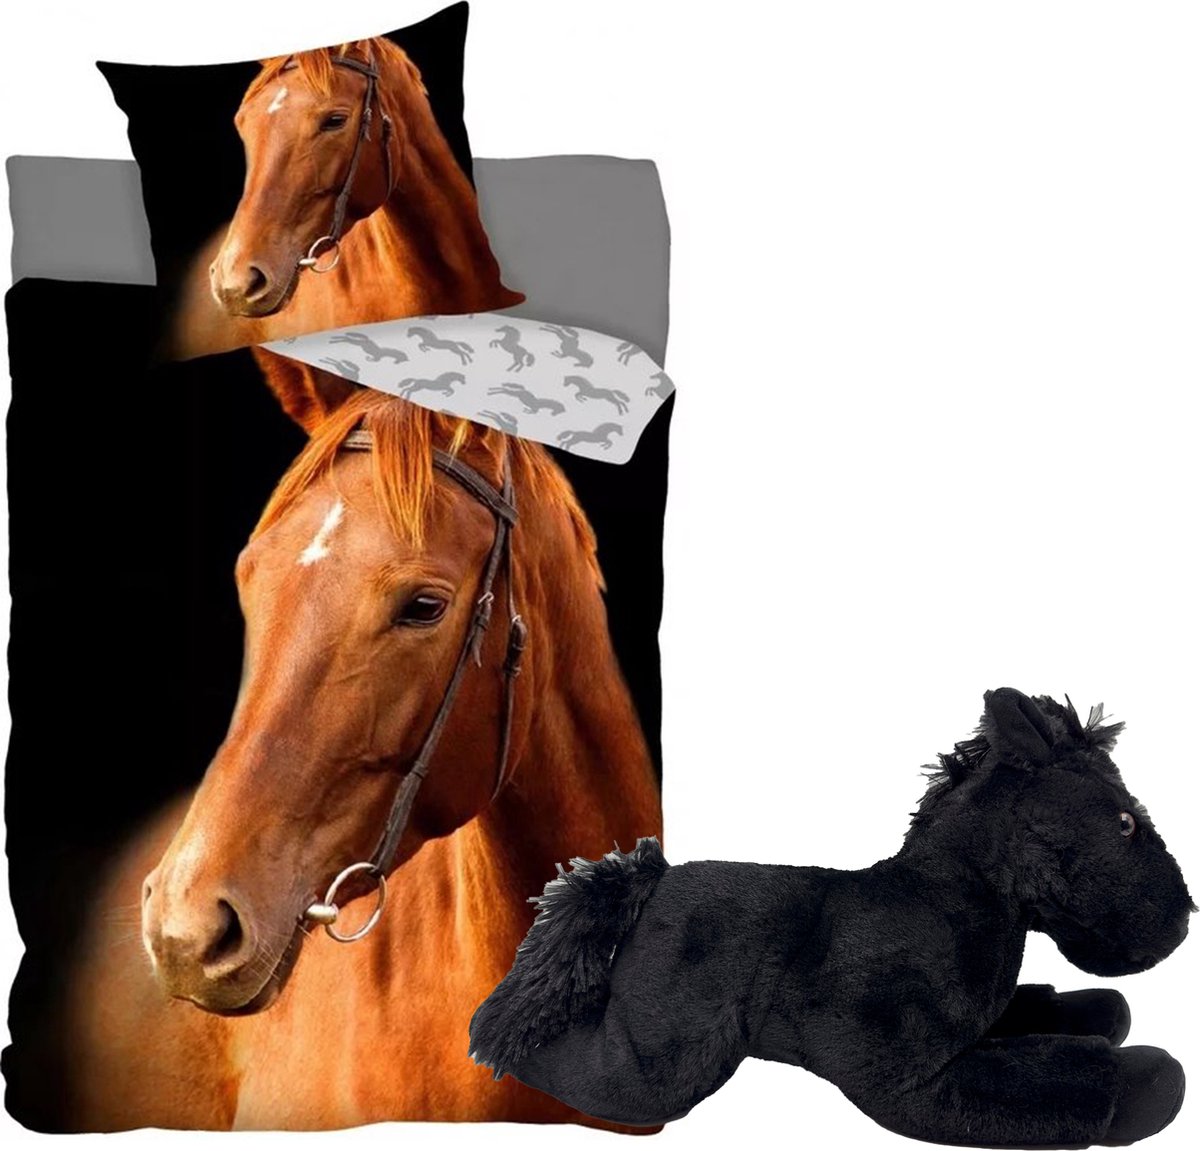 Dekbedovertrek Bruin Paard-Paardenhoofd- 140x200- katoen- incl. zwarte paarden knuffel- pluche 32cm.